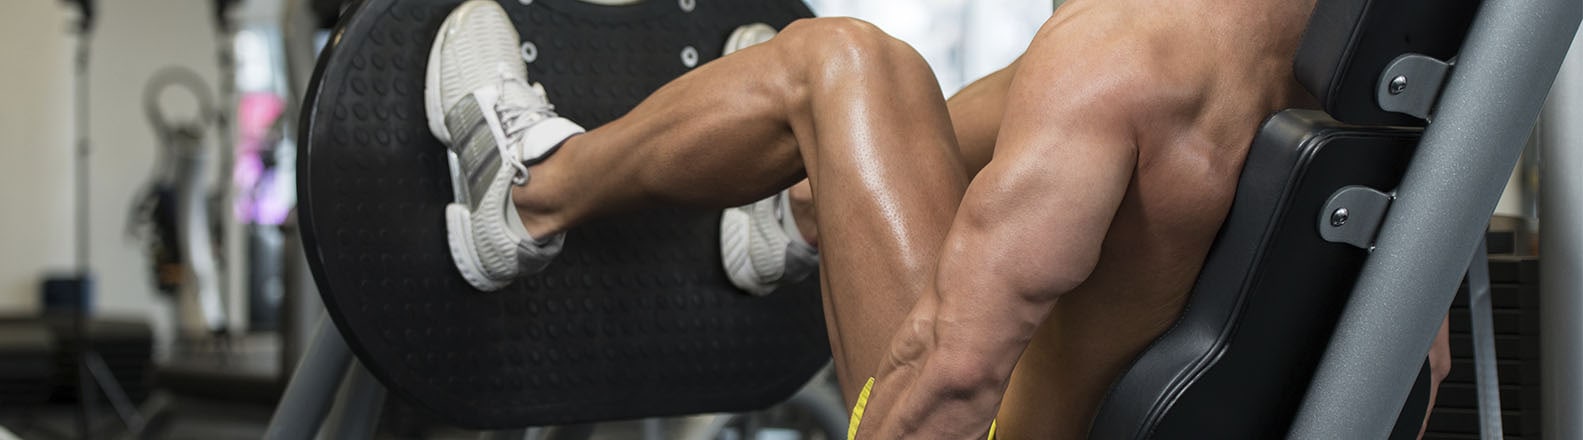 5 exercícios para o treino de quadríceps